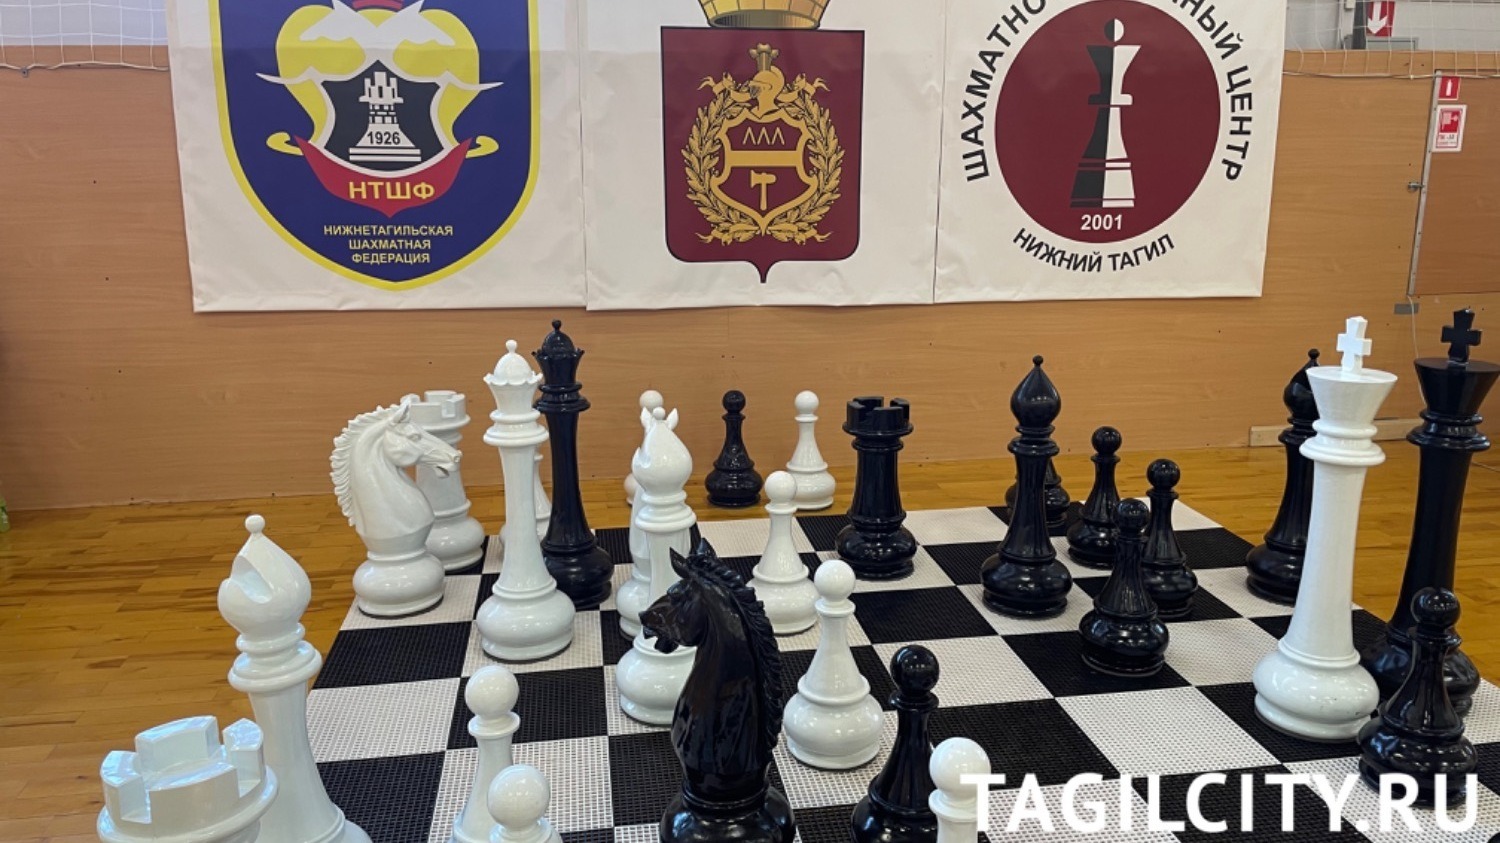 Ежегодный турнир по игре в шахматы прошел 12 августа в ФОК Президентский в Тагиле